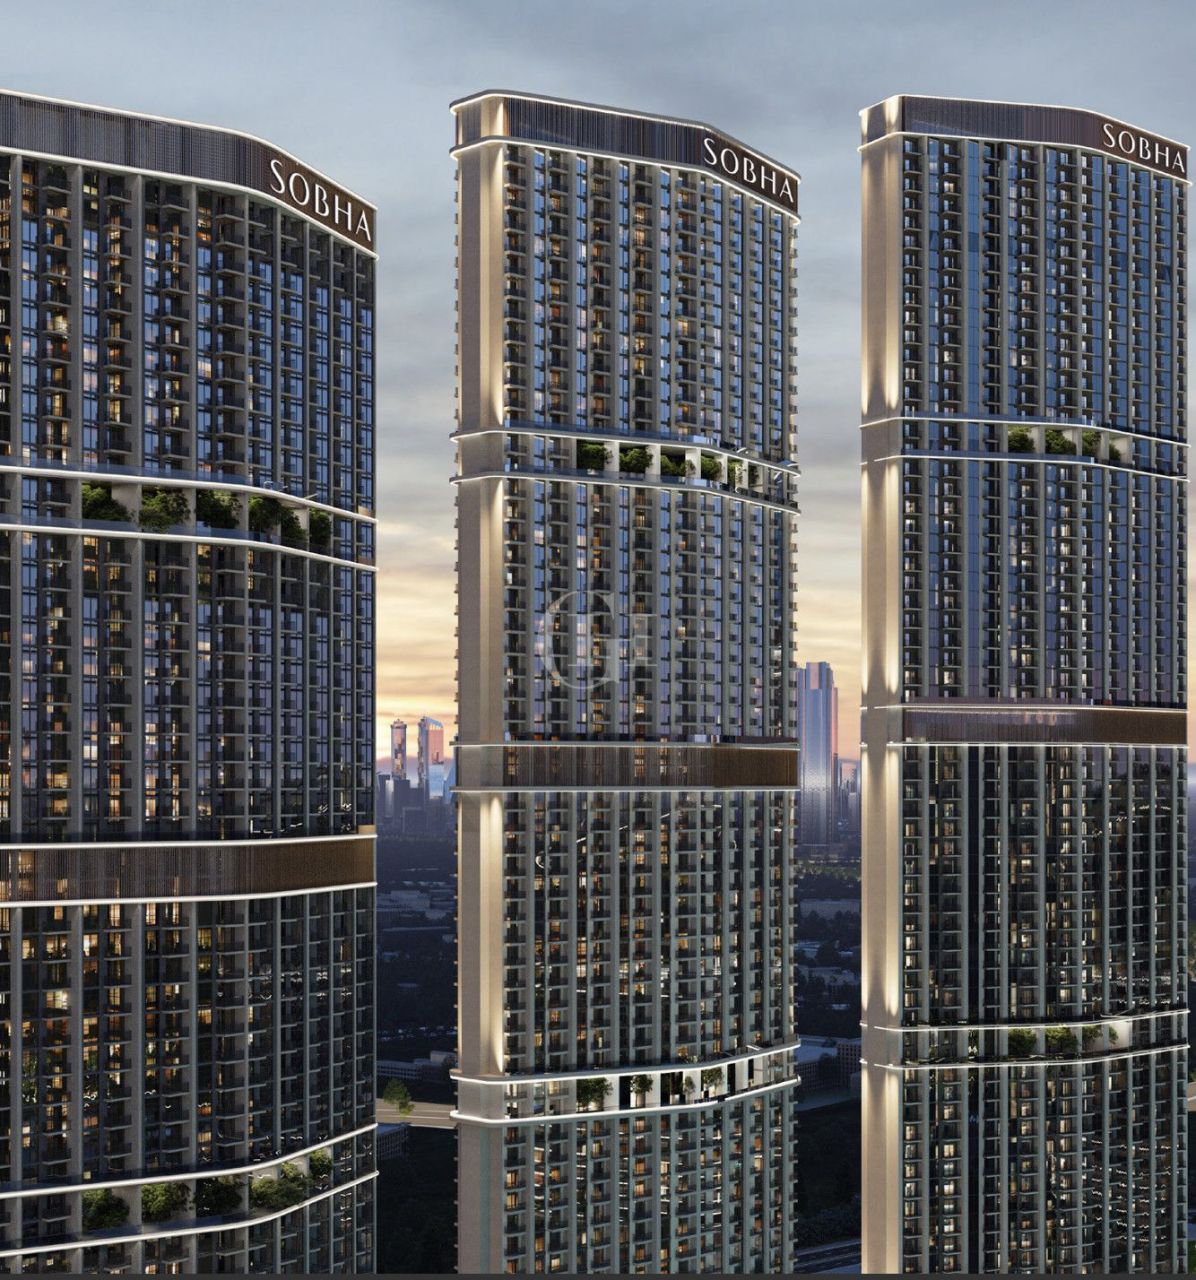 Apartment in Dubai, UAE, 210 sq.m - picture 1